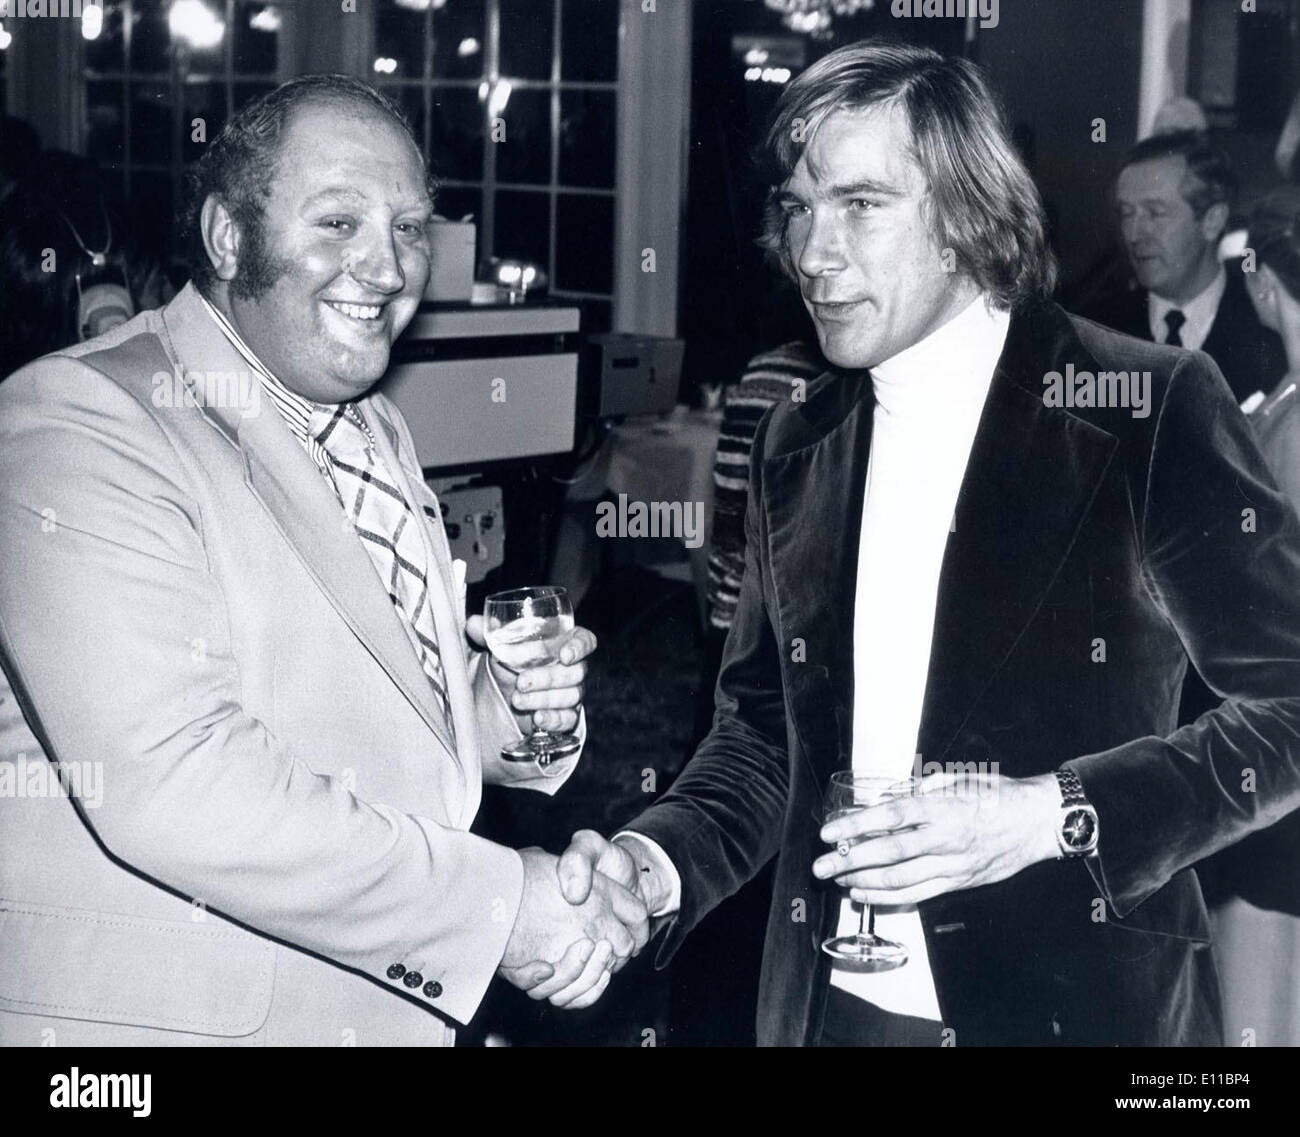 Dec 06, 1976 - Londres, Angleterre, Royaume-Uni - GERRY MARSHALL (L) et James Hunt se serrer la main à l'hôtel Royal Lancaster to show il n'y a aucun ressentiment après Hunt vendredi dernier à pointe accidentellement un verre de gin dans le visage de Marshall et lui coupe avec le verre. Banque D'Images